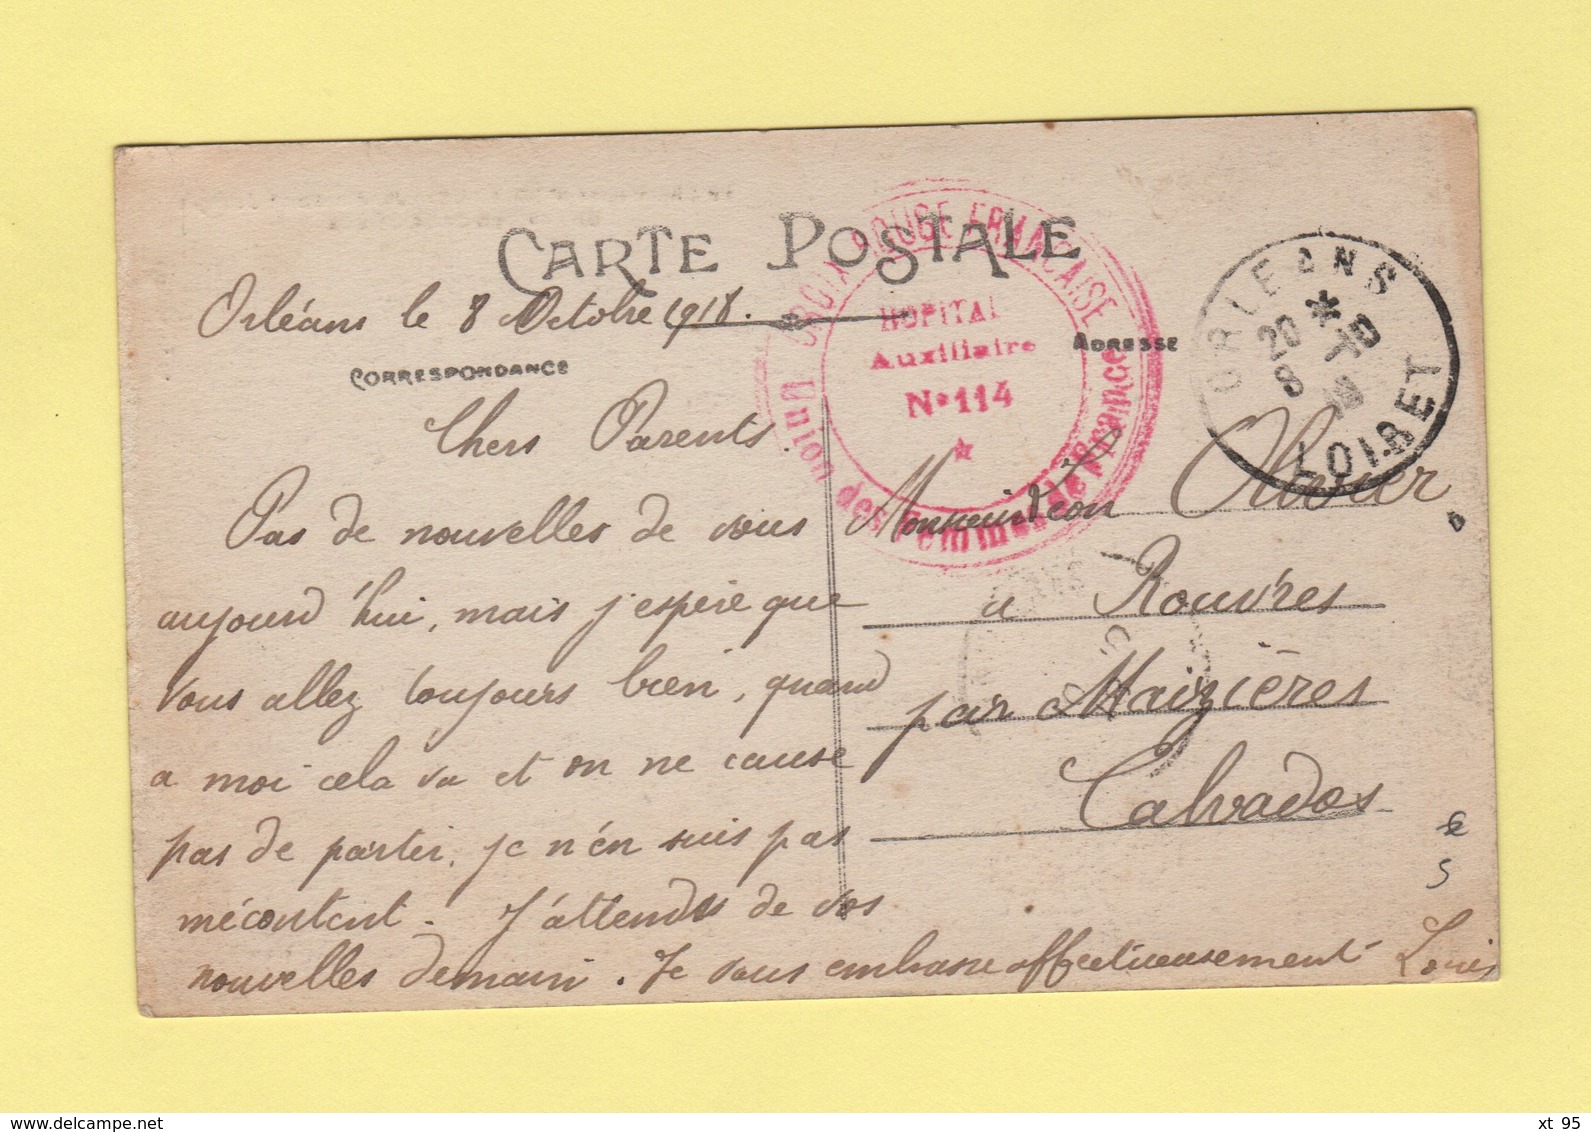 Hopital Auxiliaire N°114 - Orleans Loiret - 8-10-1918 - Croix Rouge Francaise - WW II